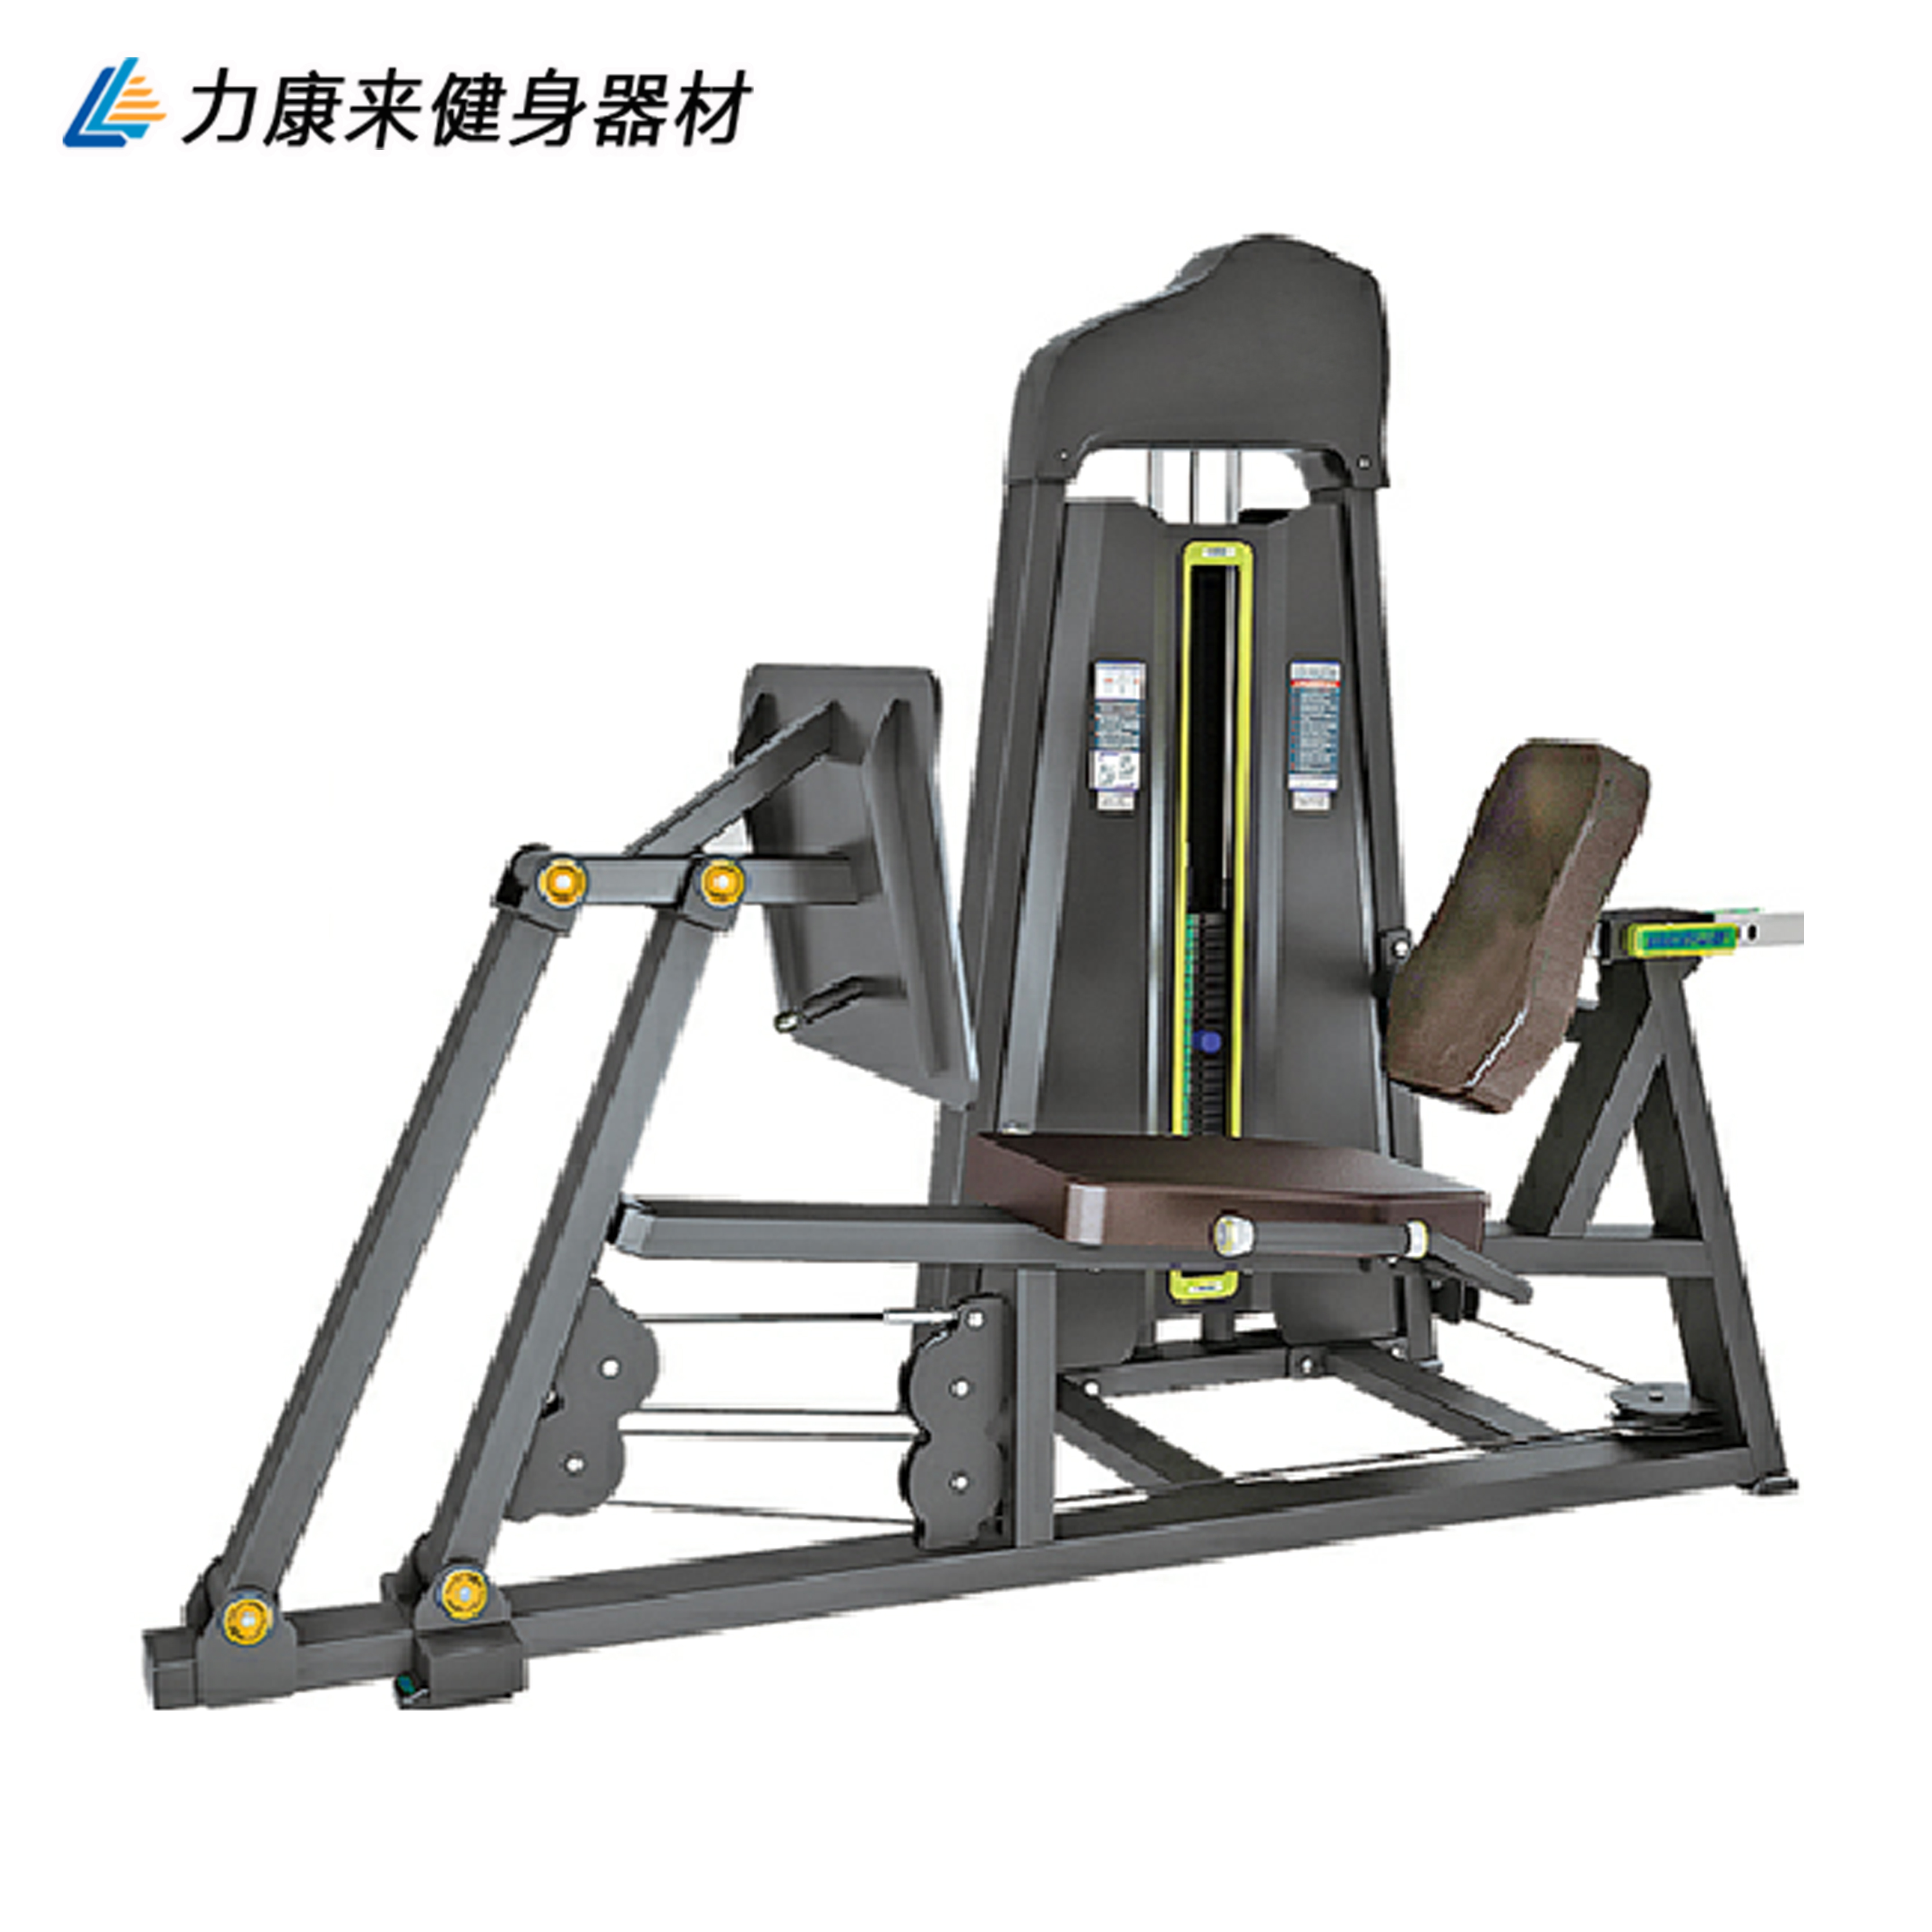 力康来坐式蹬腿训练器 健身房专用健身器材 必确系列